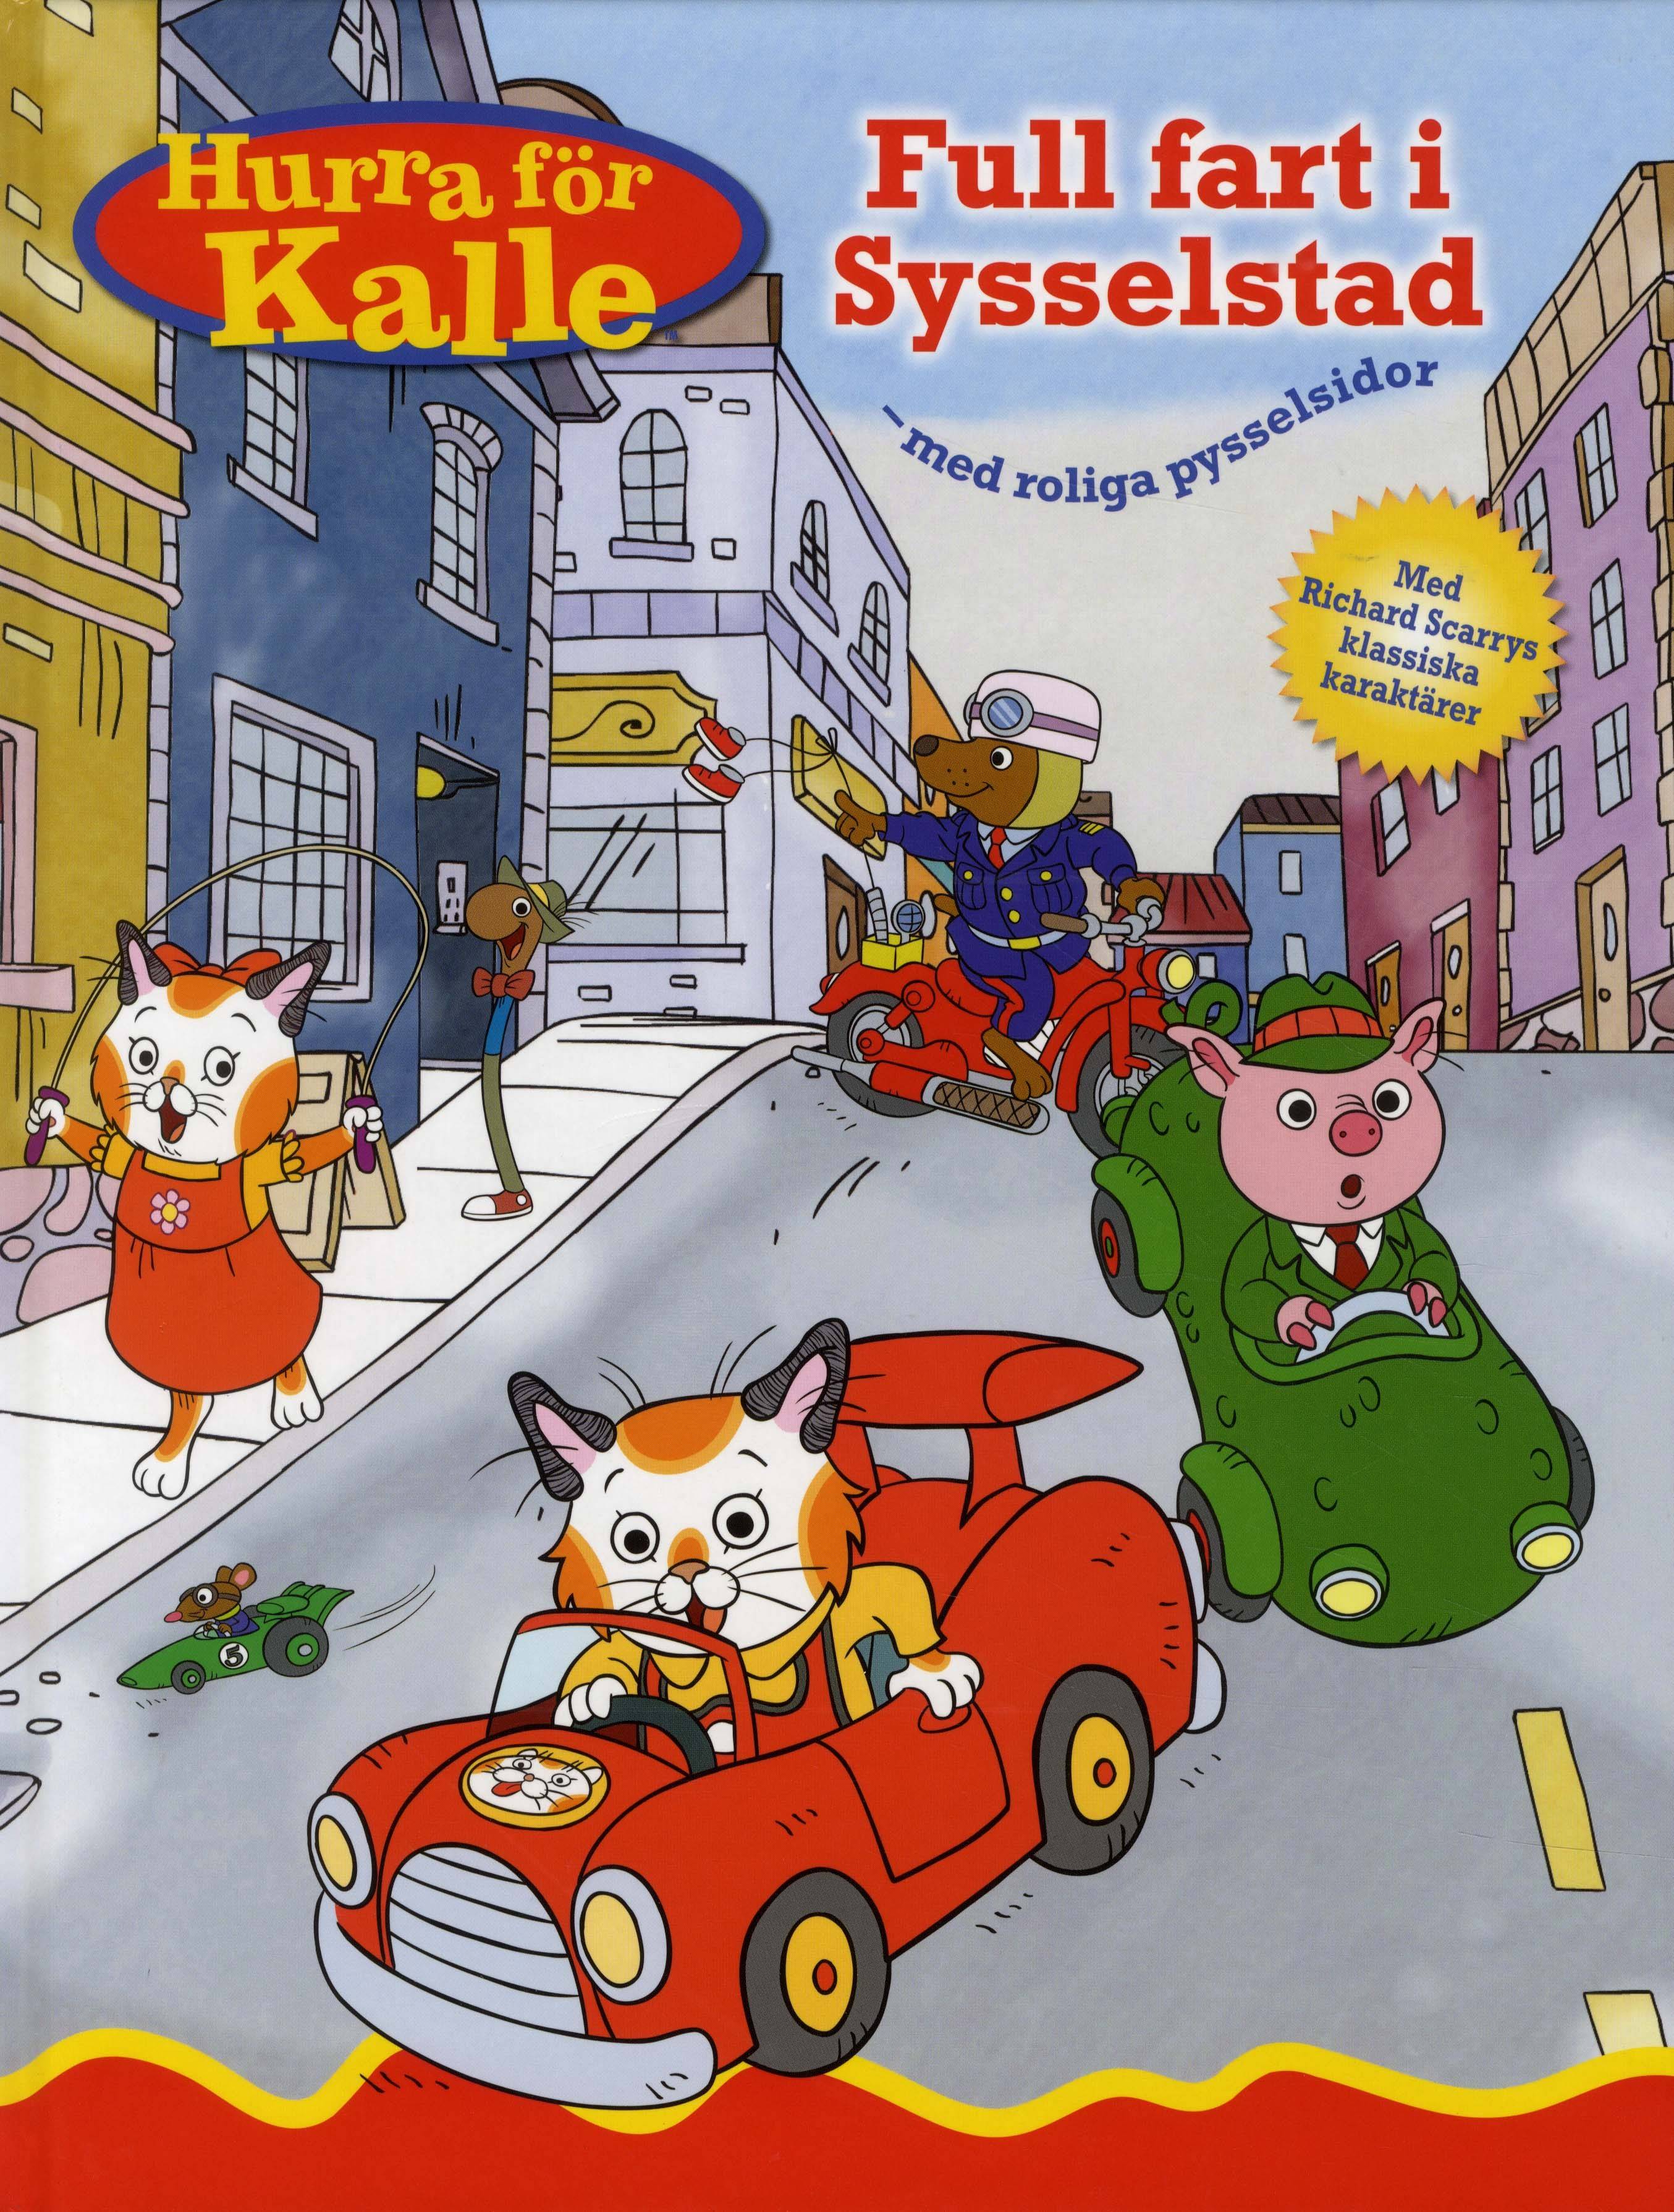 Hurra för Kalle: Full fart i Sysselstad